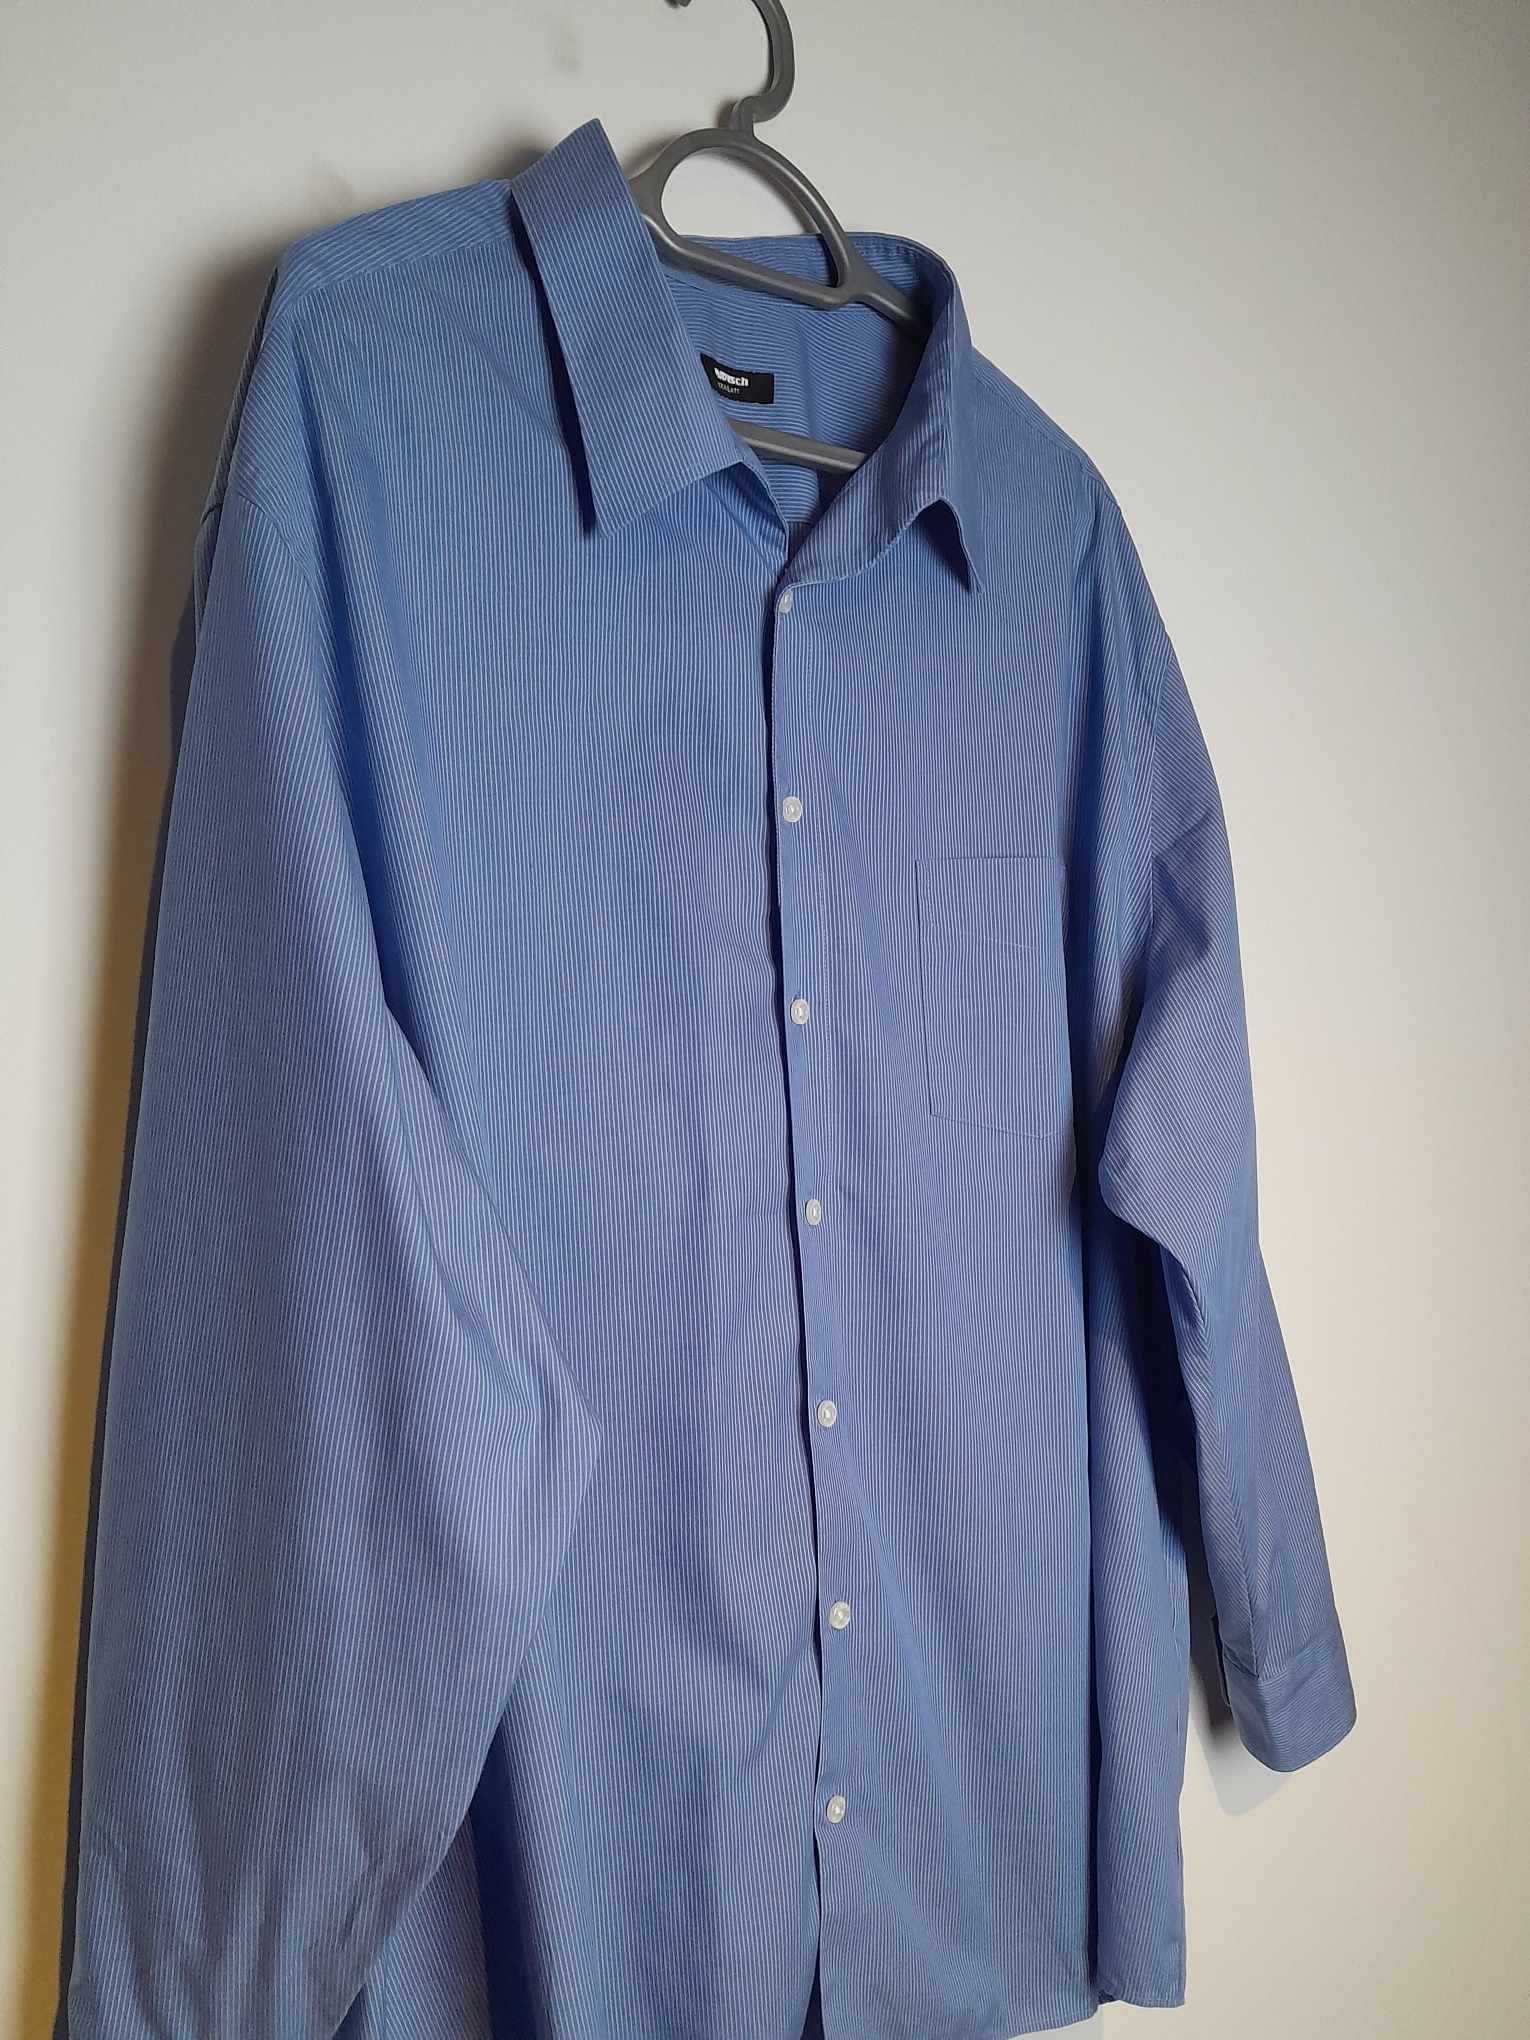 Niebieska koszula męska z długim rękawem w paski Walbusch 51/52